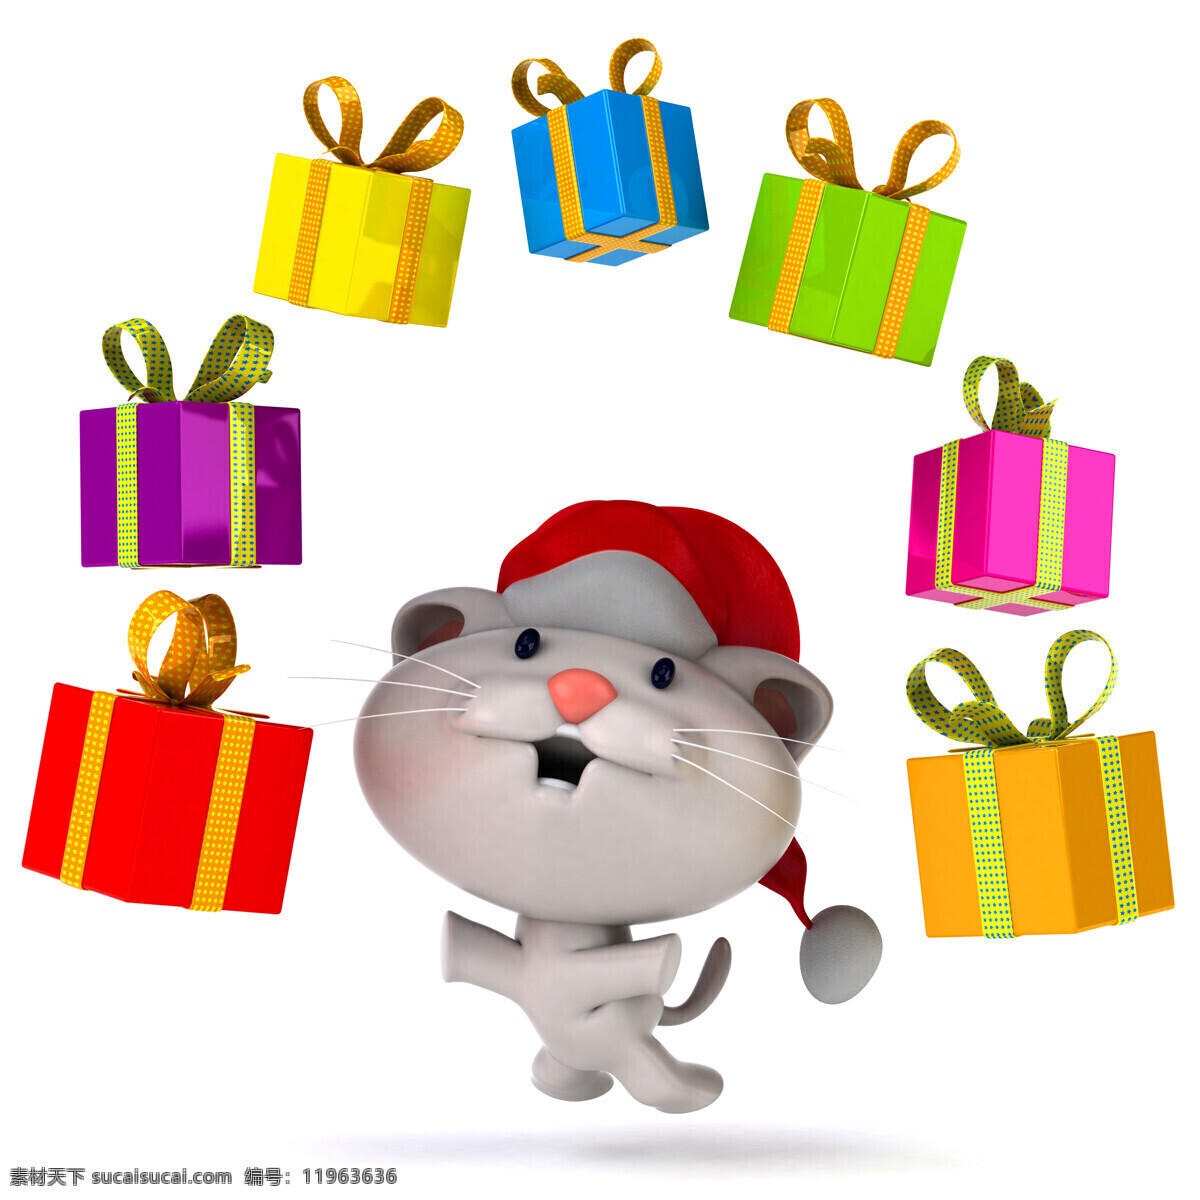 礼物 盒 戴 圣诞 帽子 老鼠 礼物盒 戴圣诞帽子 3d动物 陆地动物 生物世界